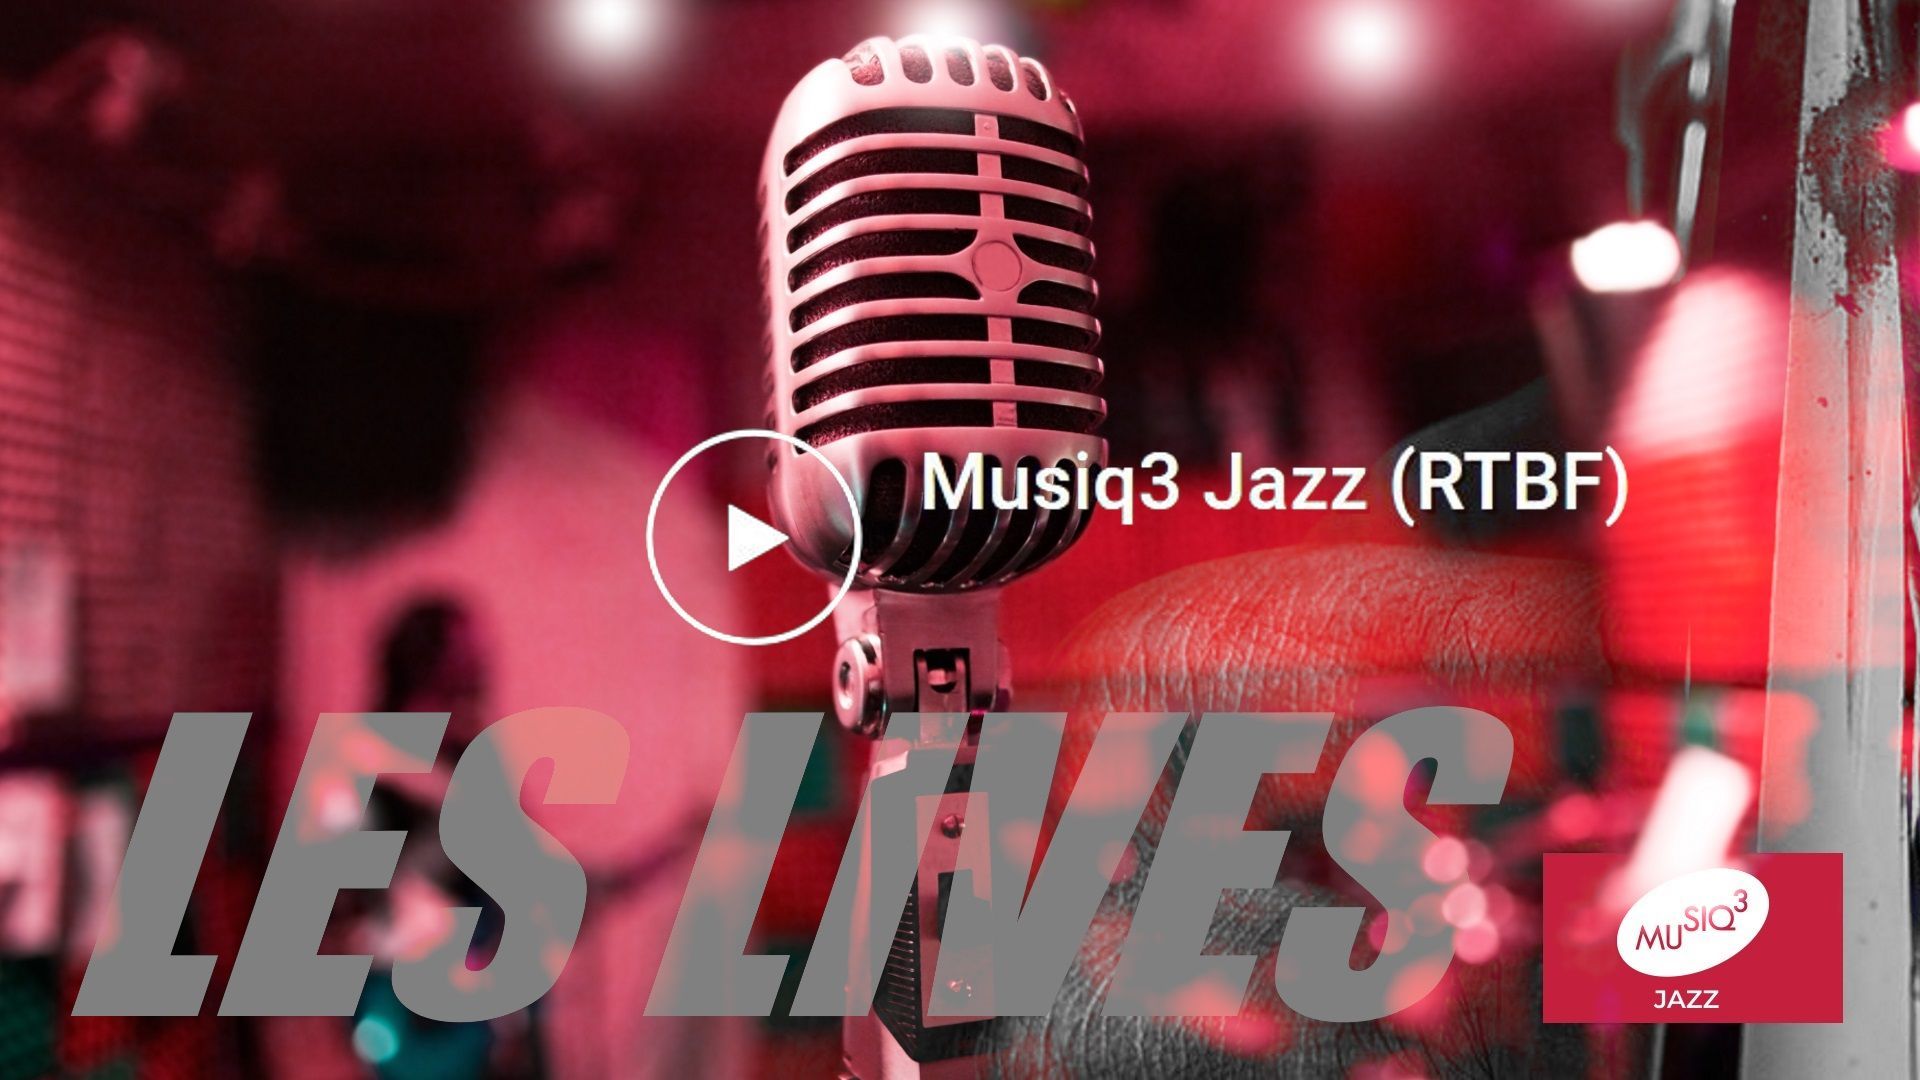 Des concerts jazz tous les dimanches à 21h sur la radio thématique jazz de Musiq3